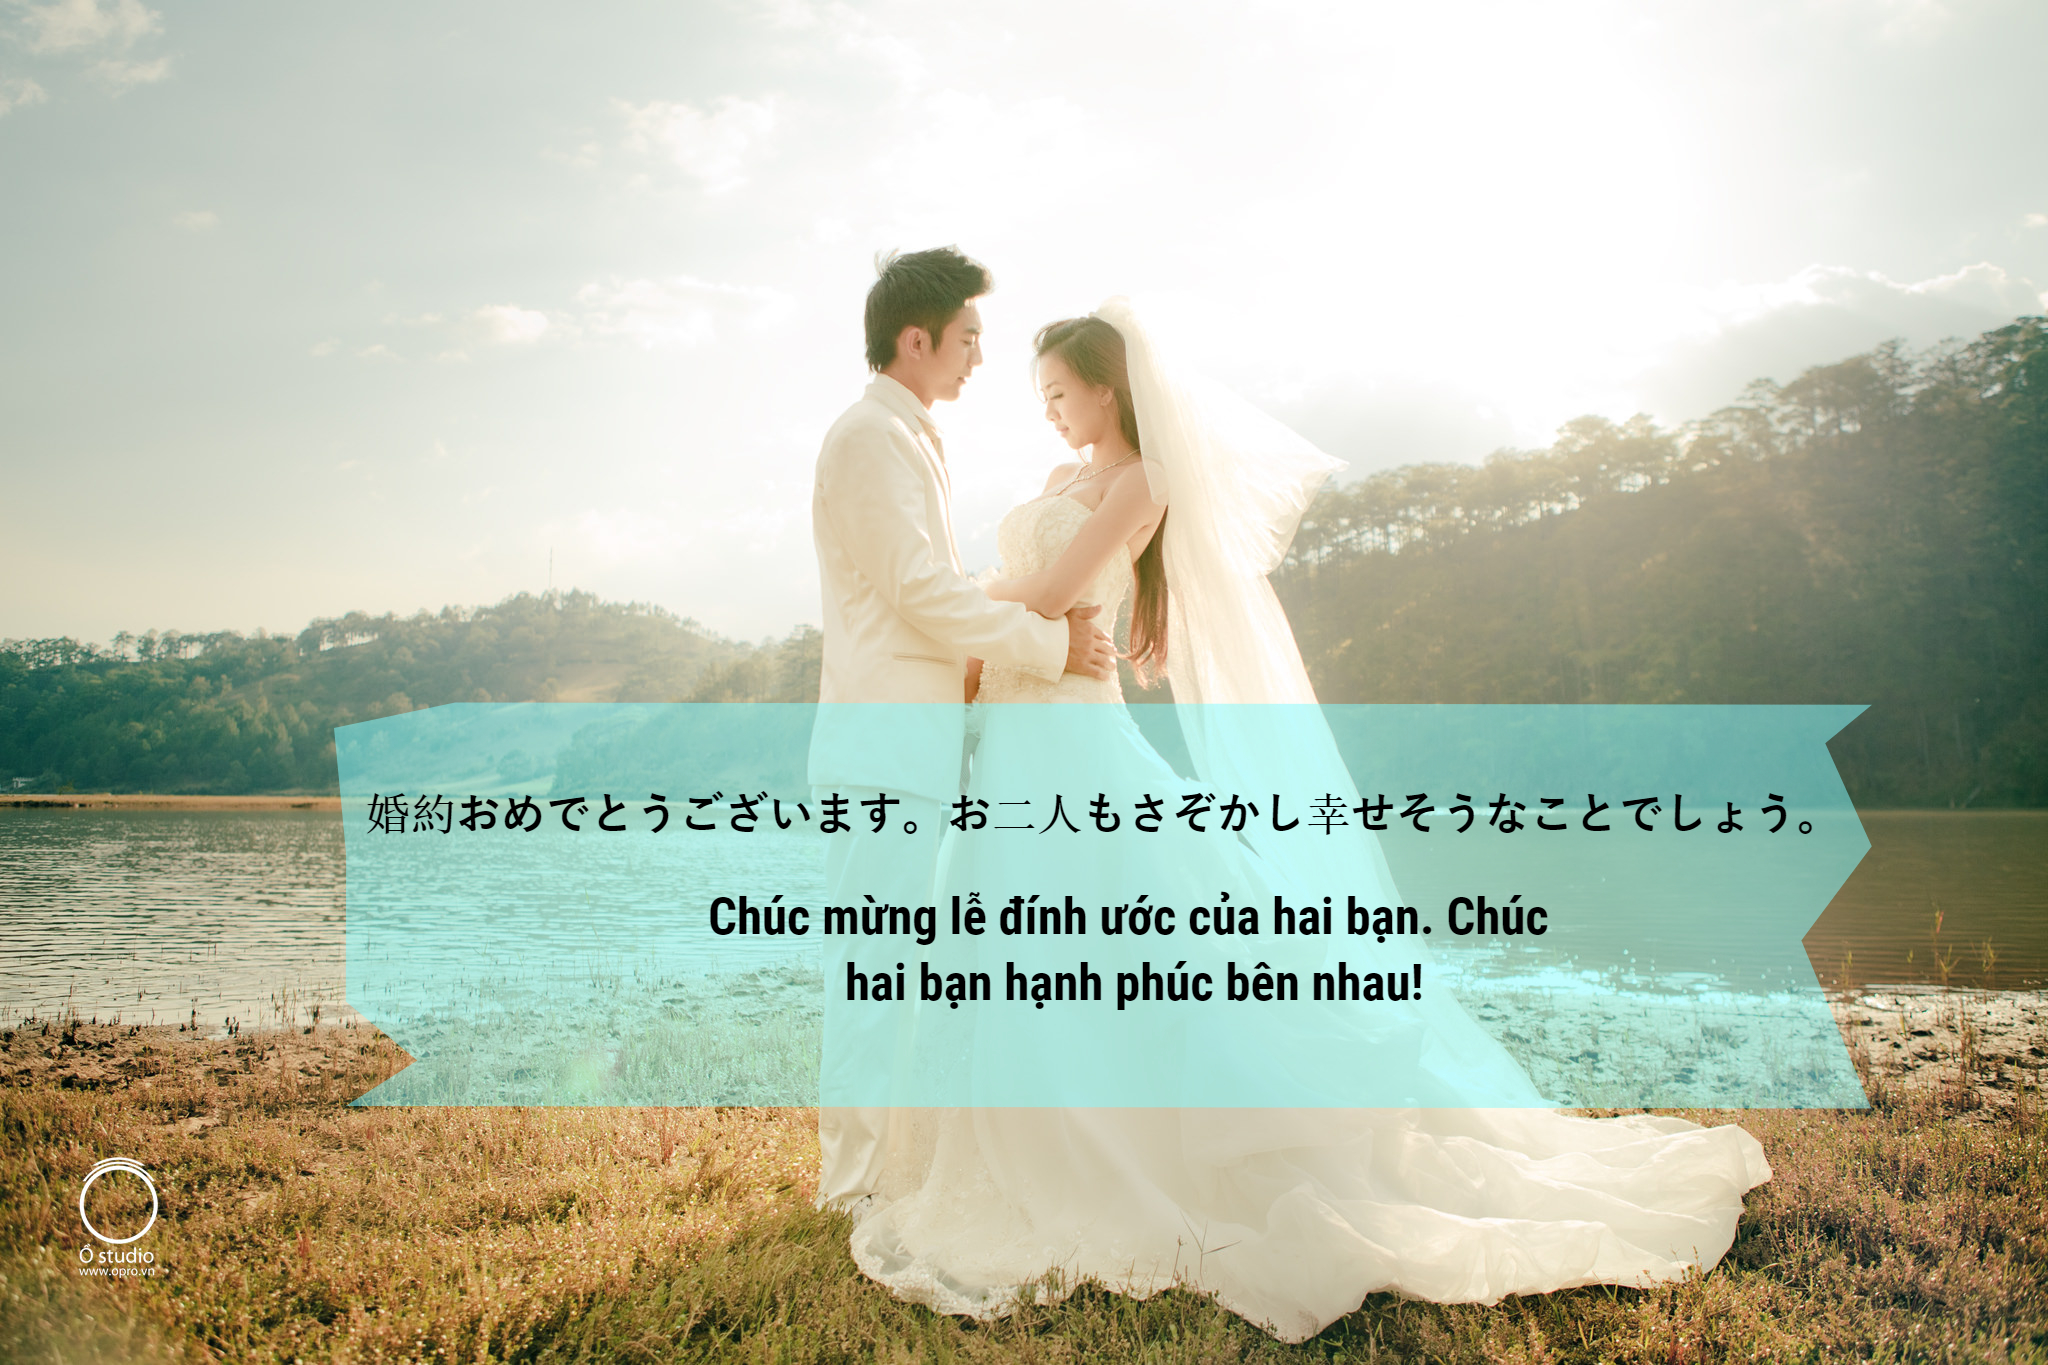 Từ vựng tiếng Nhật chủ đề lễ cưới “truấtsss” phát ngất